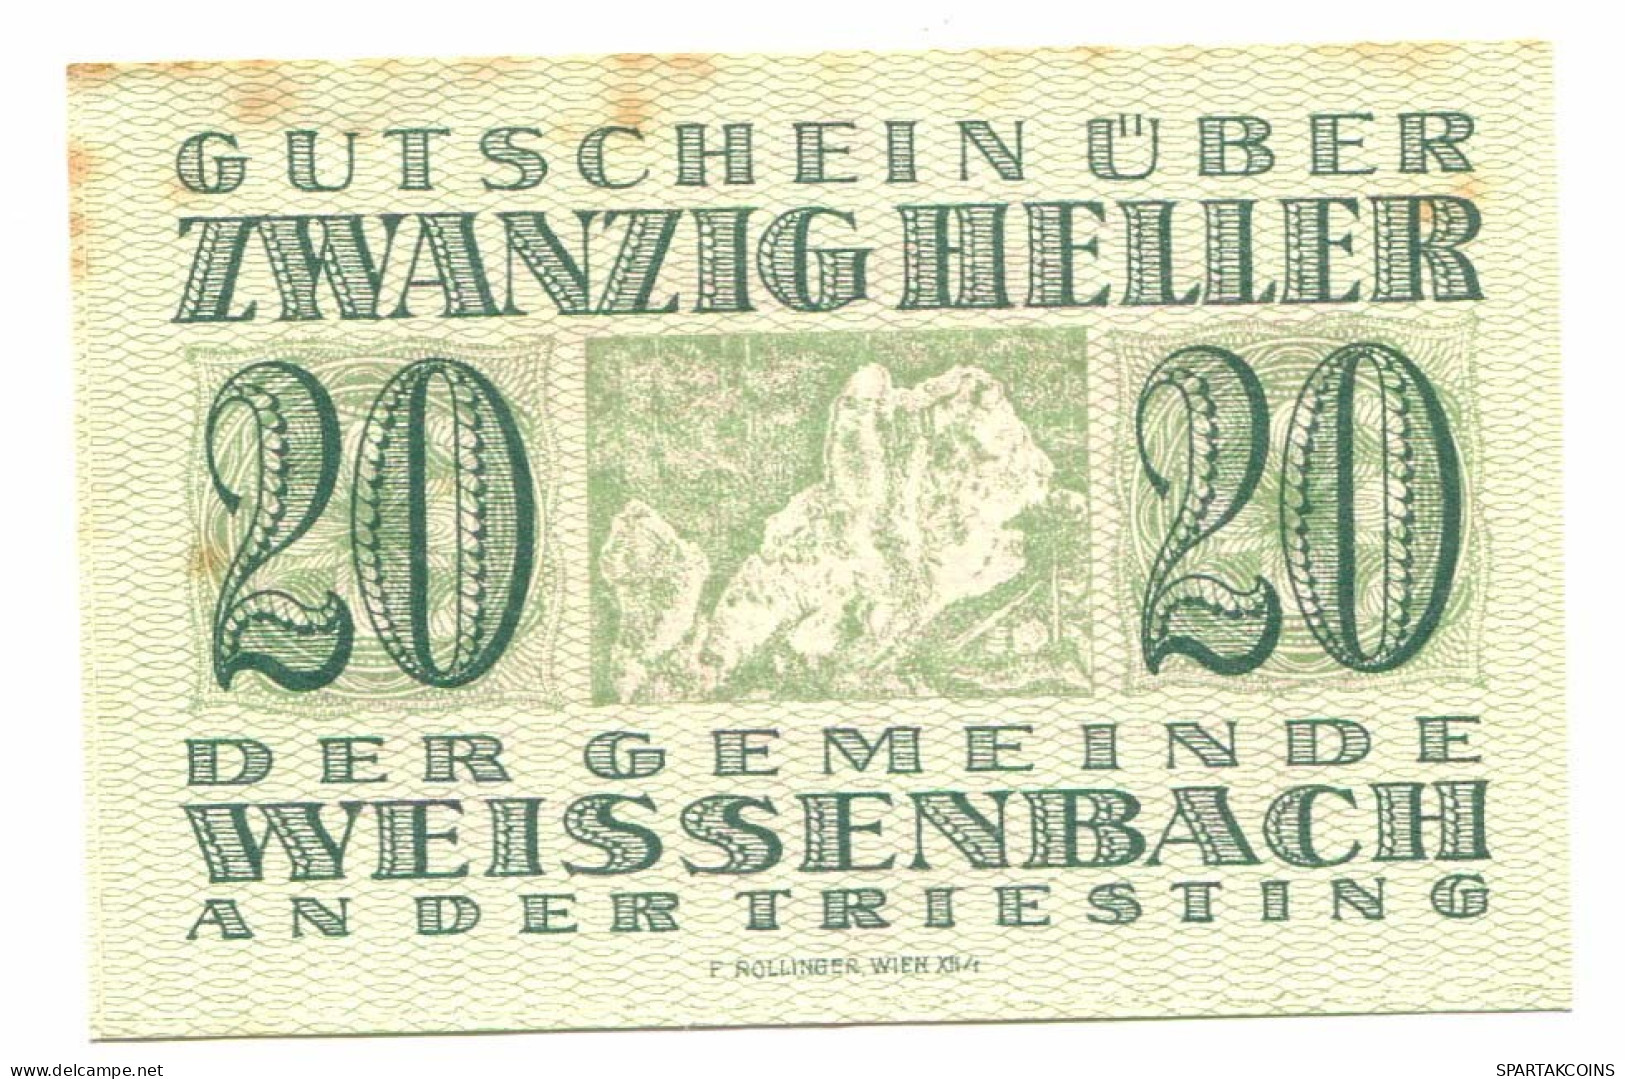 20 Heller 1920 WEISENBACH Österreich UNC Notgeld Papiergeld Banknote #P10434 - [11] Local Banknote Issues